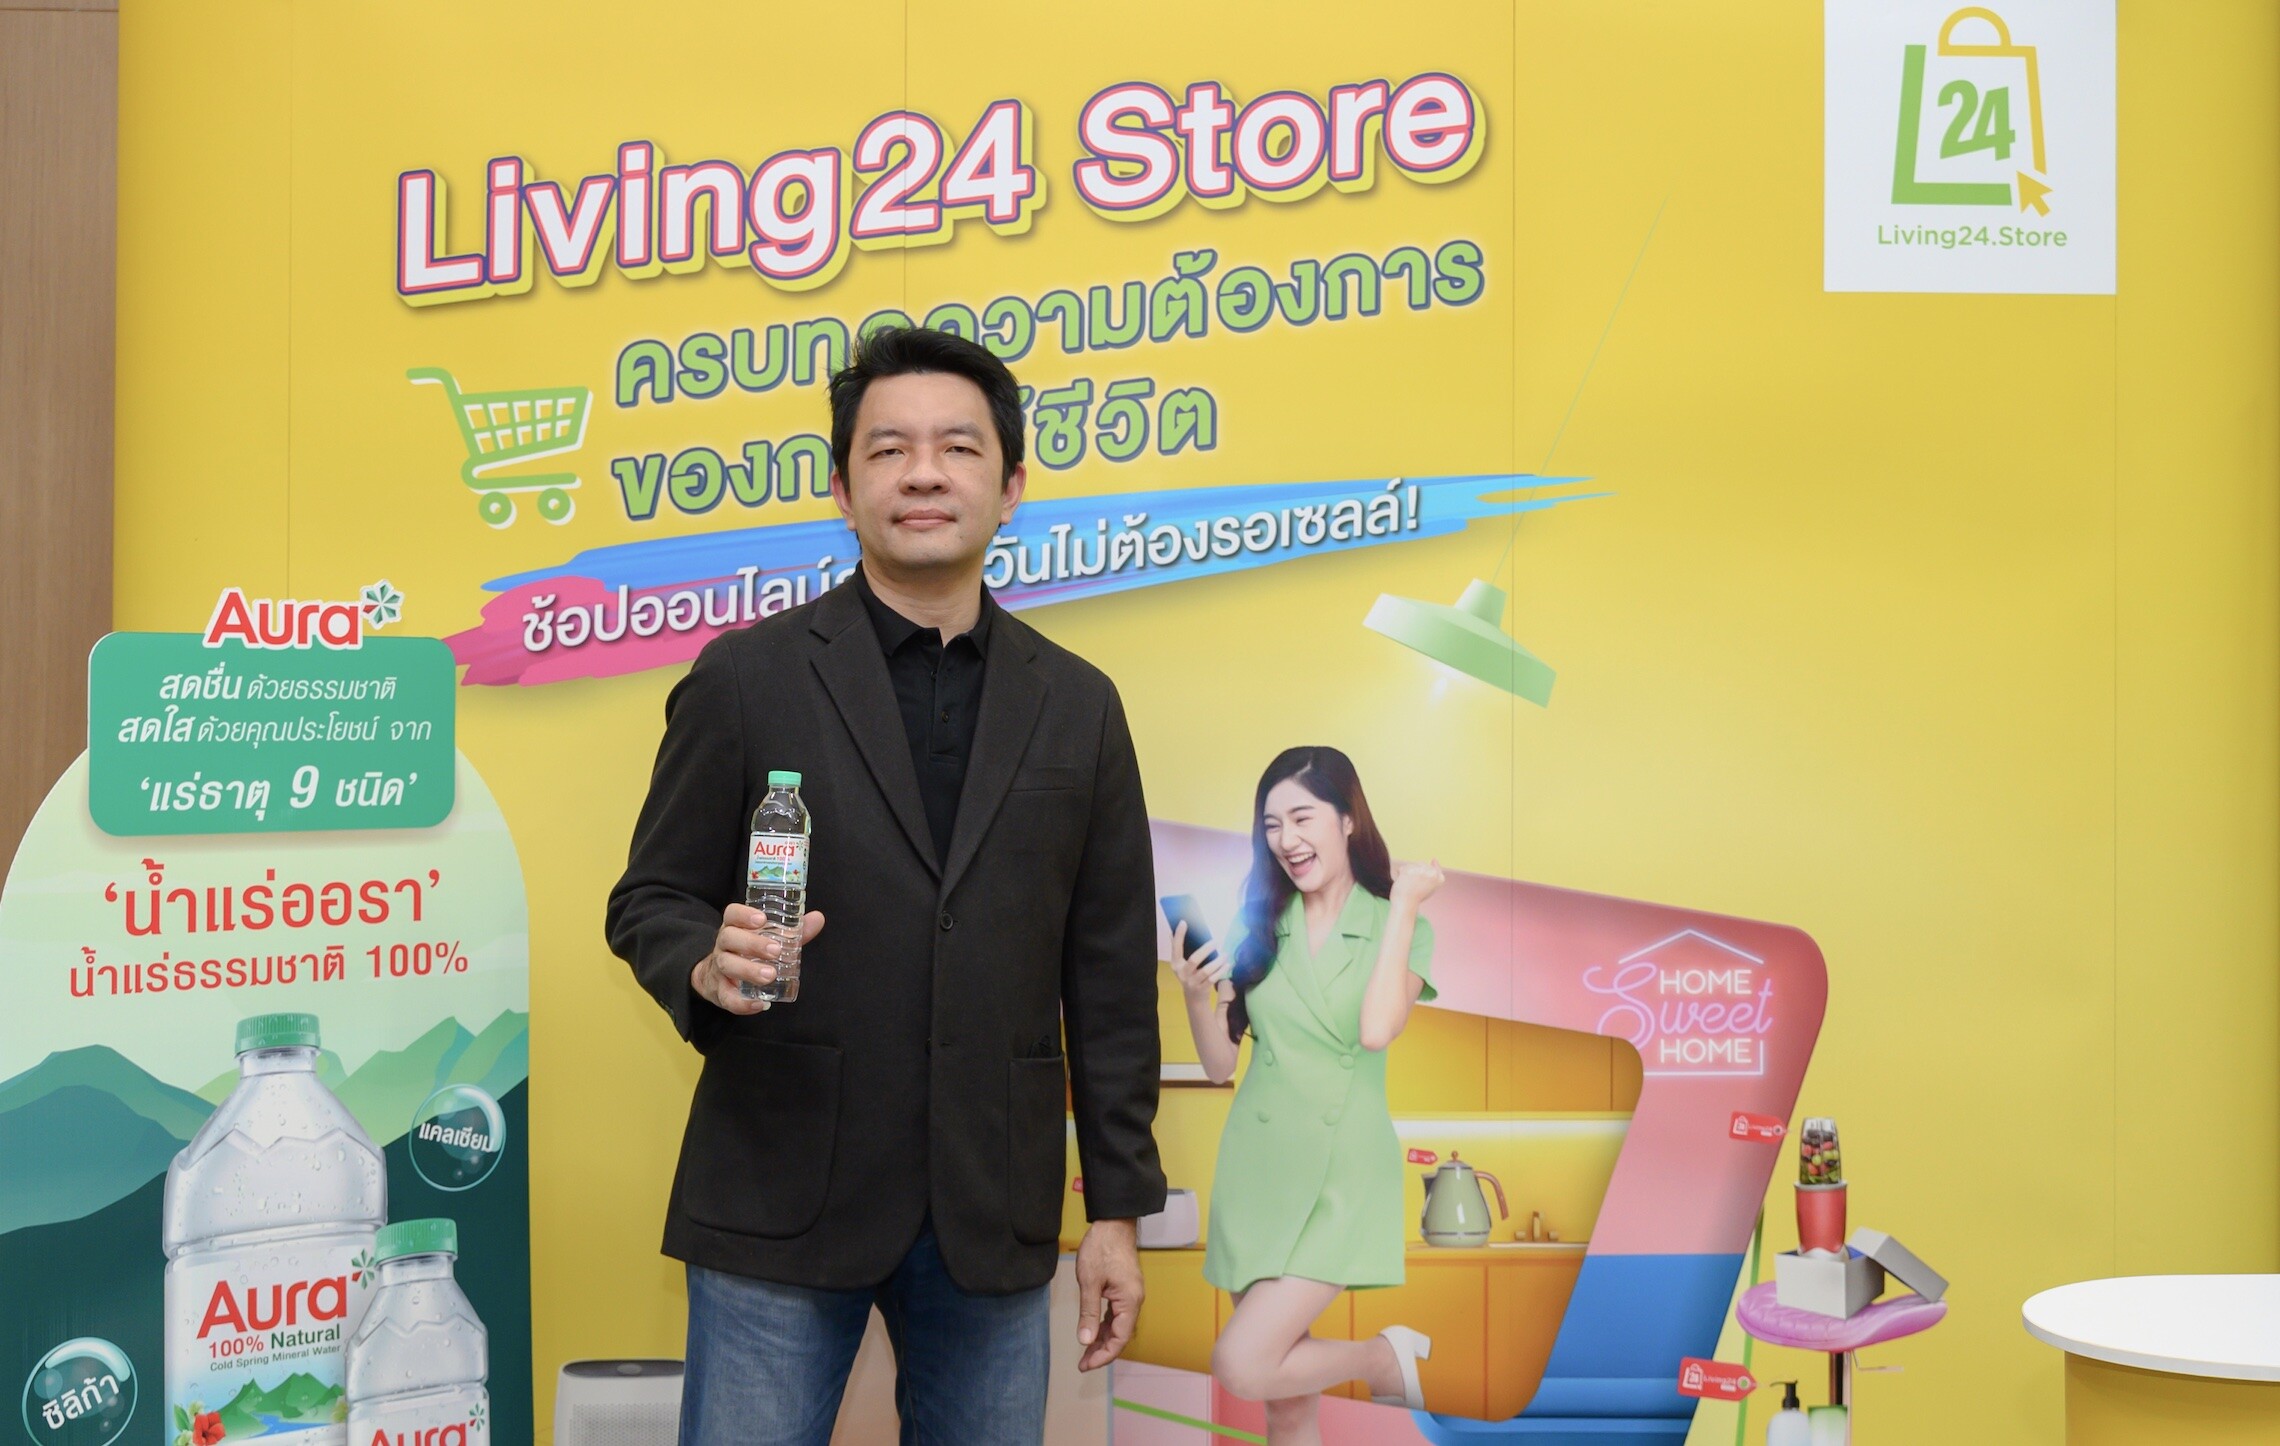 ทิปโก้ ส่ง "น้ำแร่ Aura" รุกตลาดออนไลน์ ขยายฐานลูกค้า จับมือ LPP ปล่อยแคมเปญสินค้าราคาพิเศษผ่าน Living24 Store สำหรับผู้พักอาศัย"